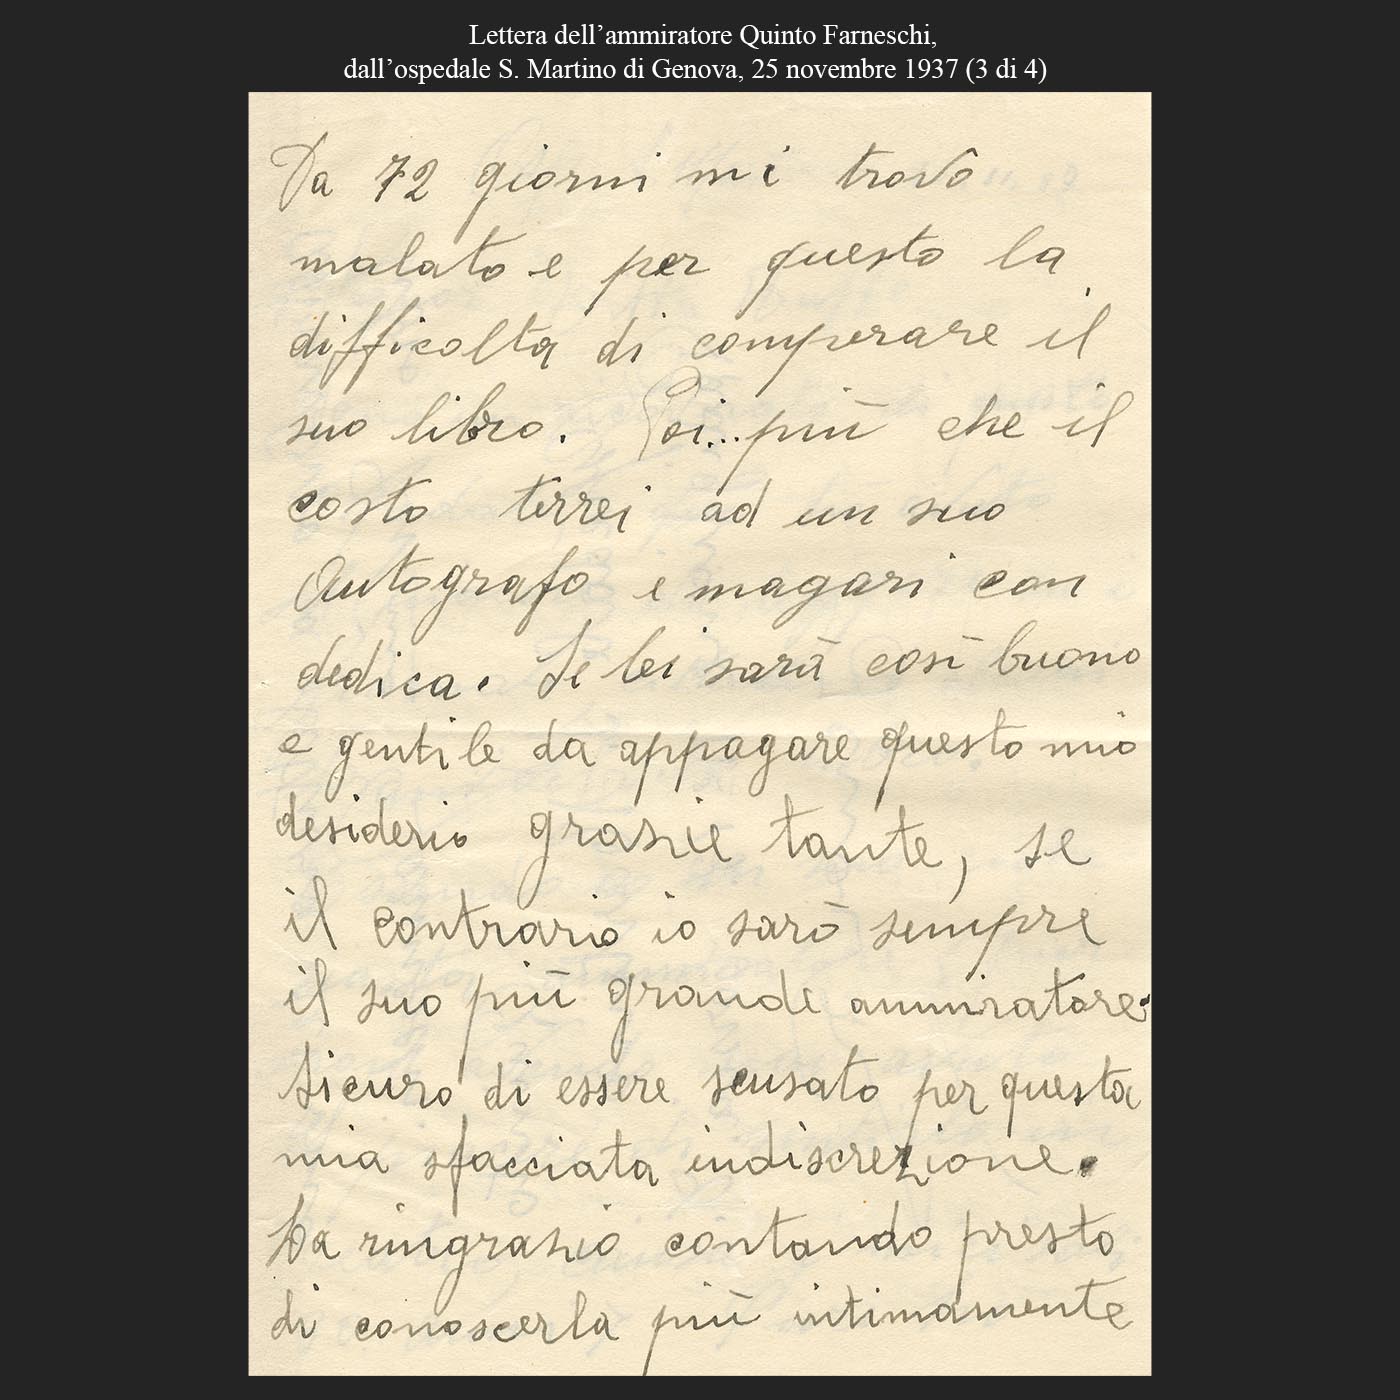 Lettera dell’ammiratore Quinto Farneschi, dall’ospedale S. Martino di Genova, 25 novembre 1937 (3di4)